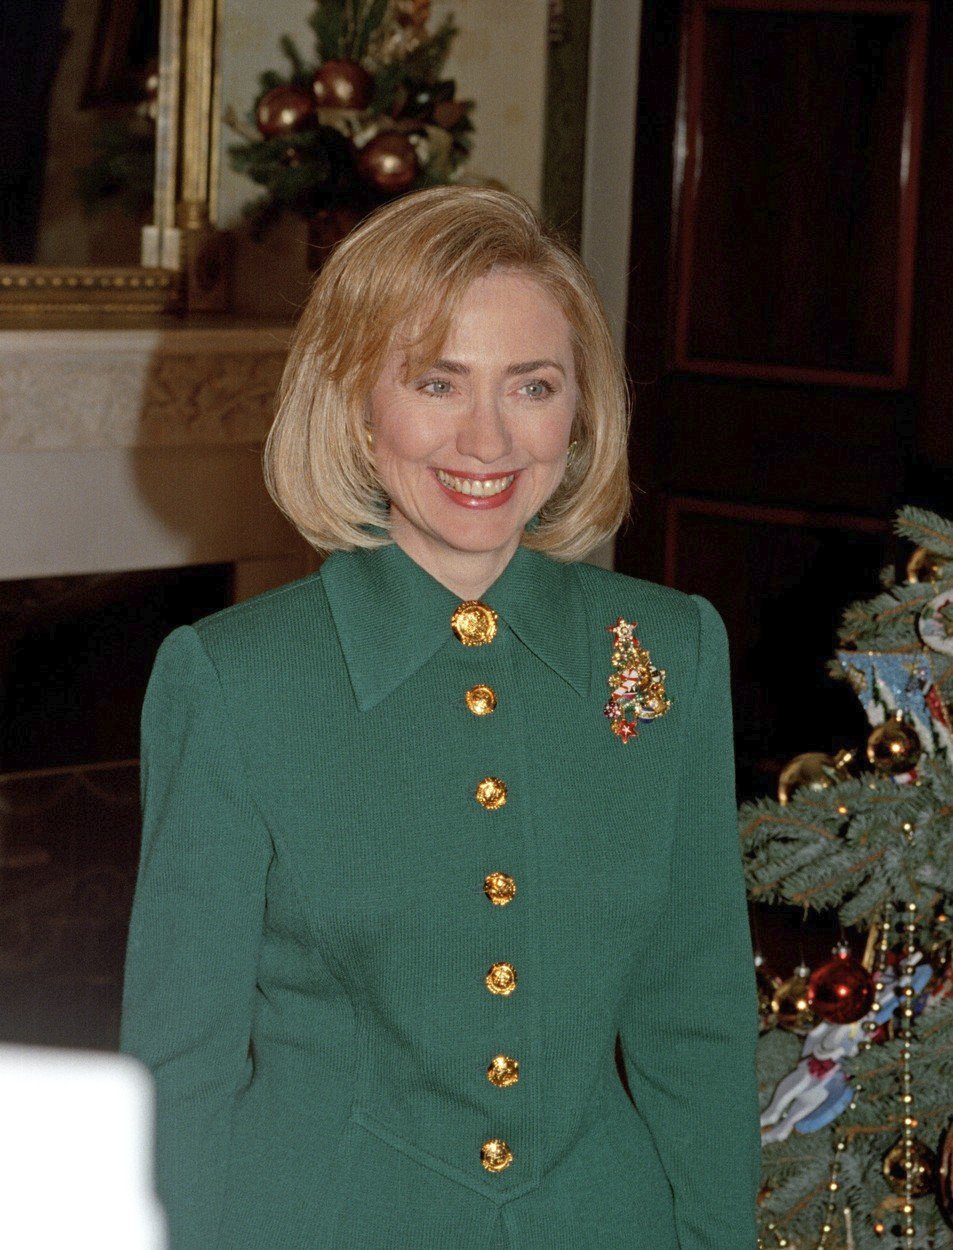 Hillary Clinton, bývalá první dáma USA za vlády Billa Clintona v letech 1993 až 2001.